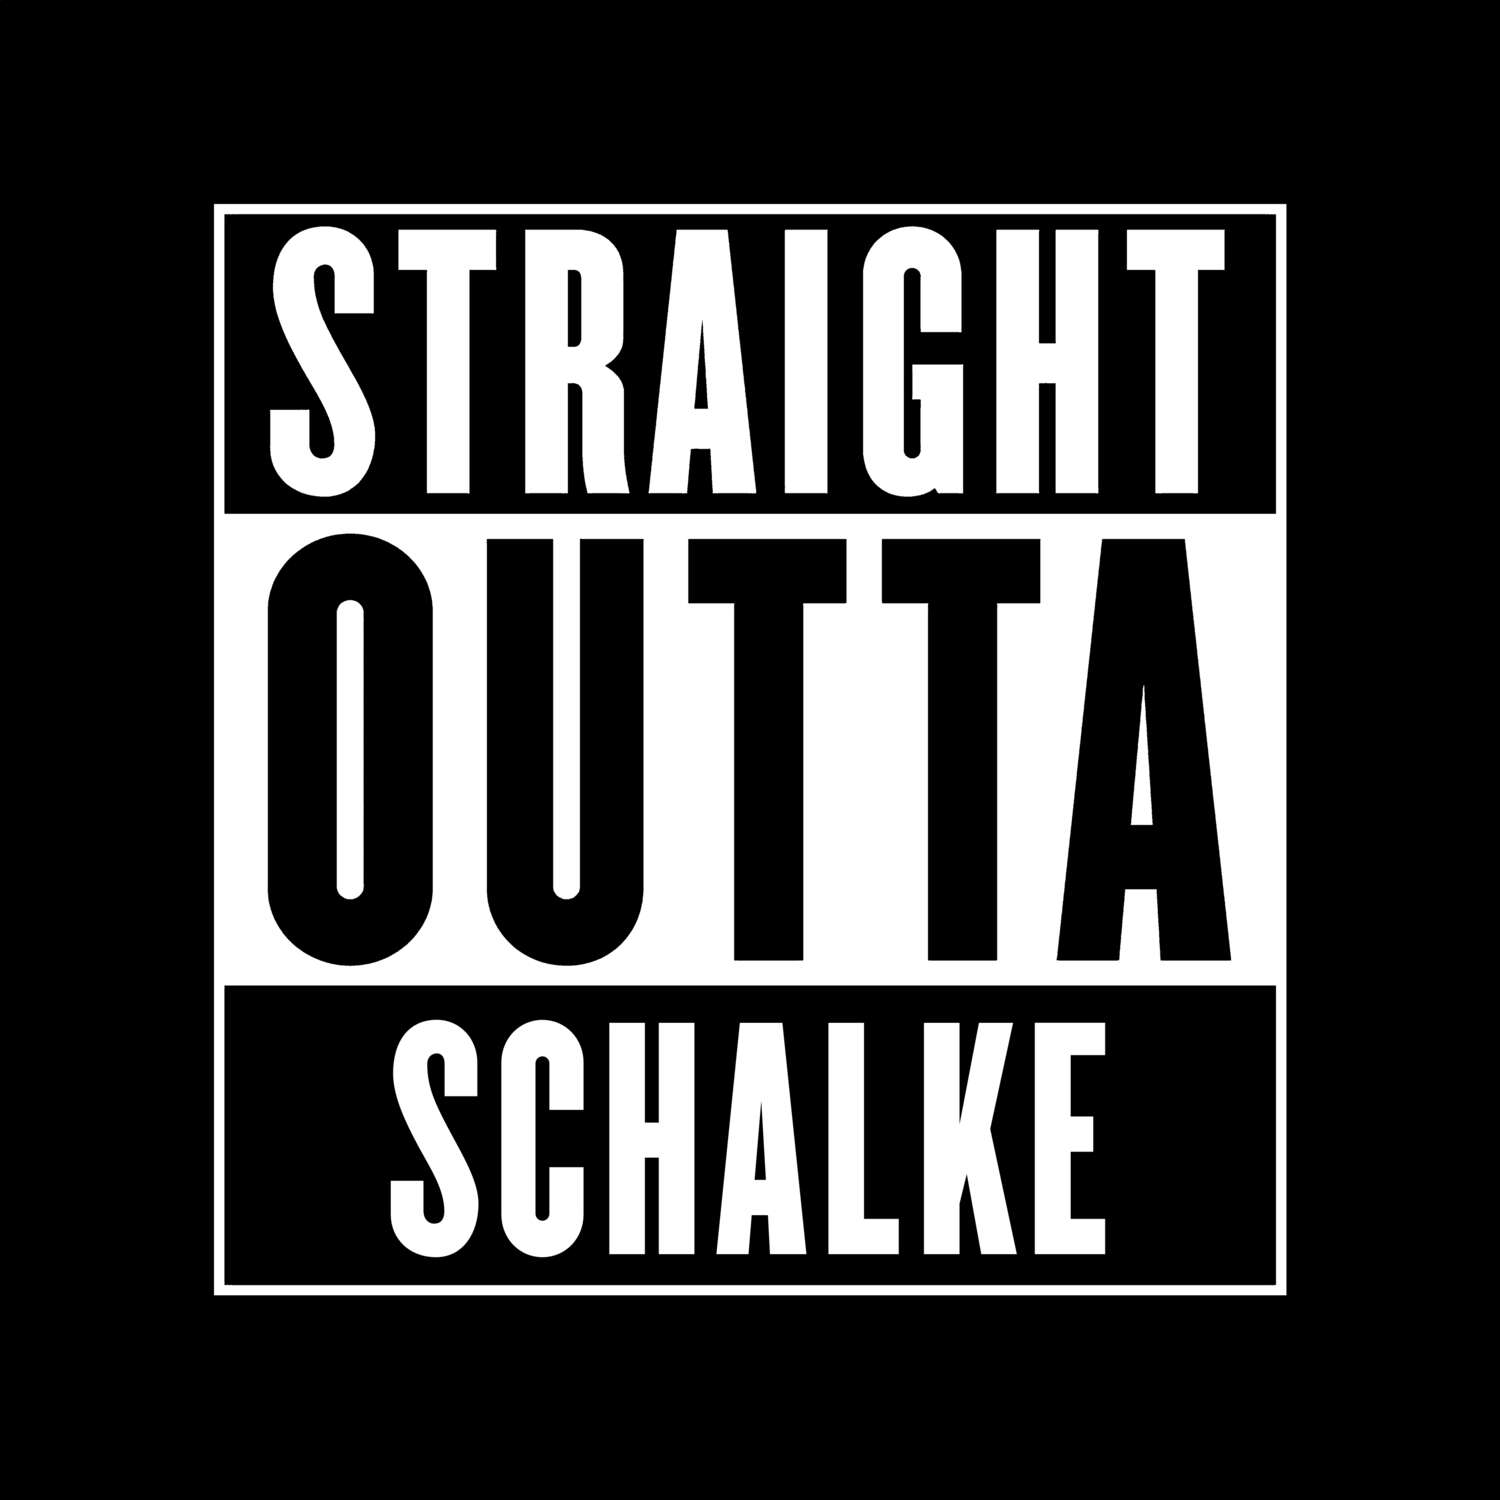 Schalke T-Shirt »Straight Outta«